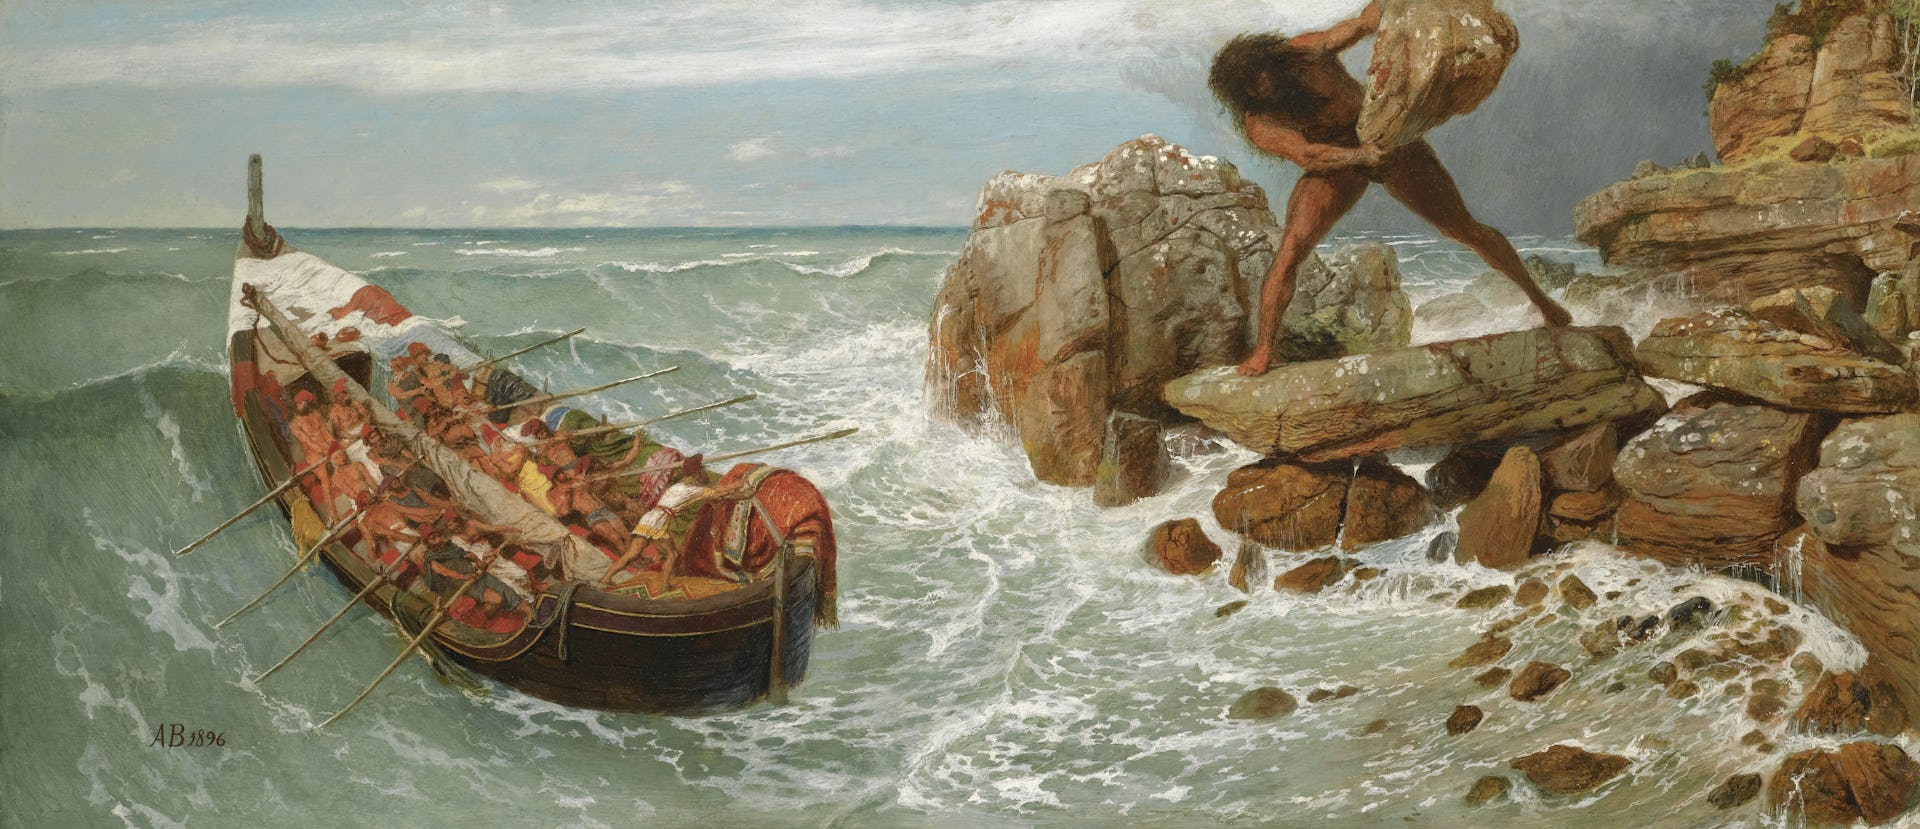 Odysseus and Polyphemus by Arnold Böcklin (1896)